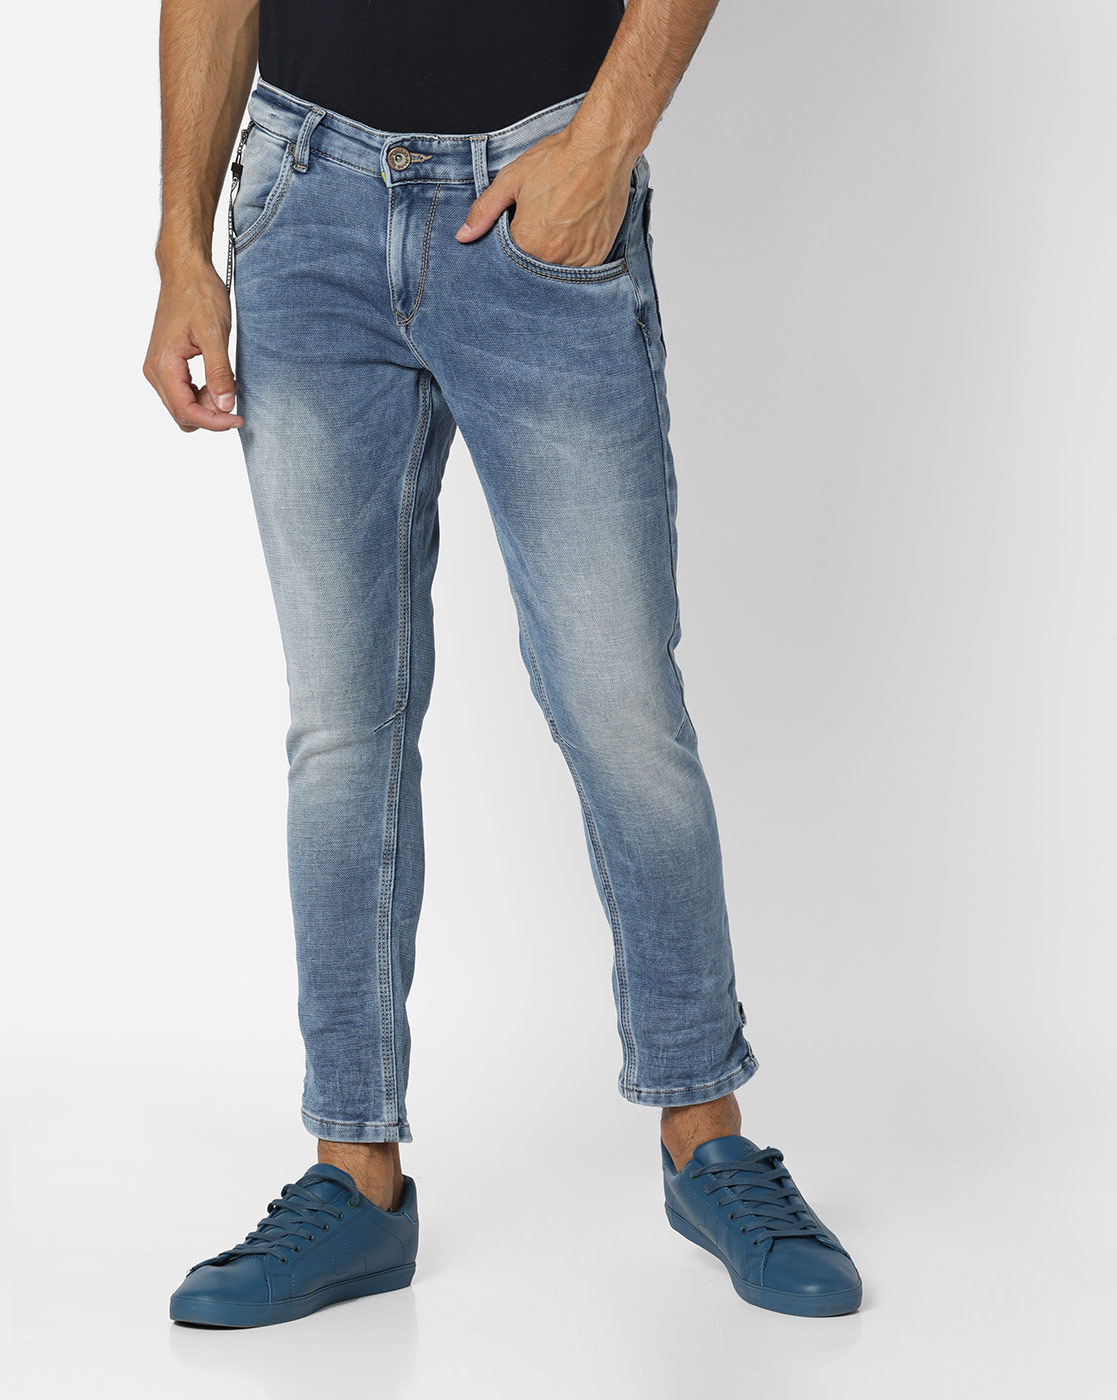 spykar ankle length jeans